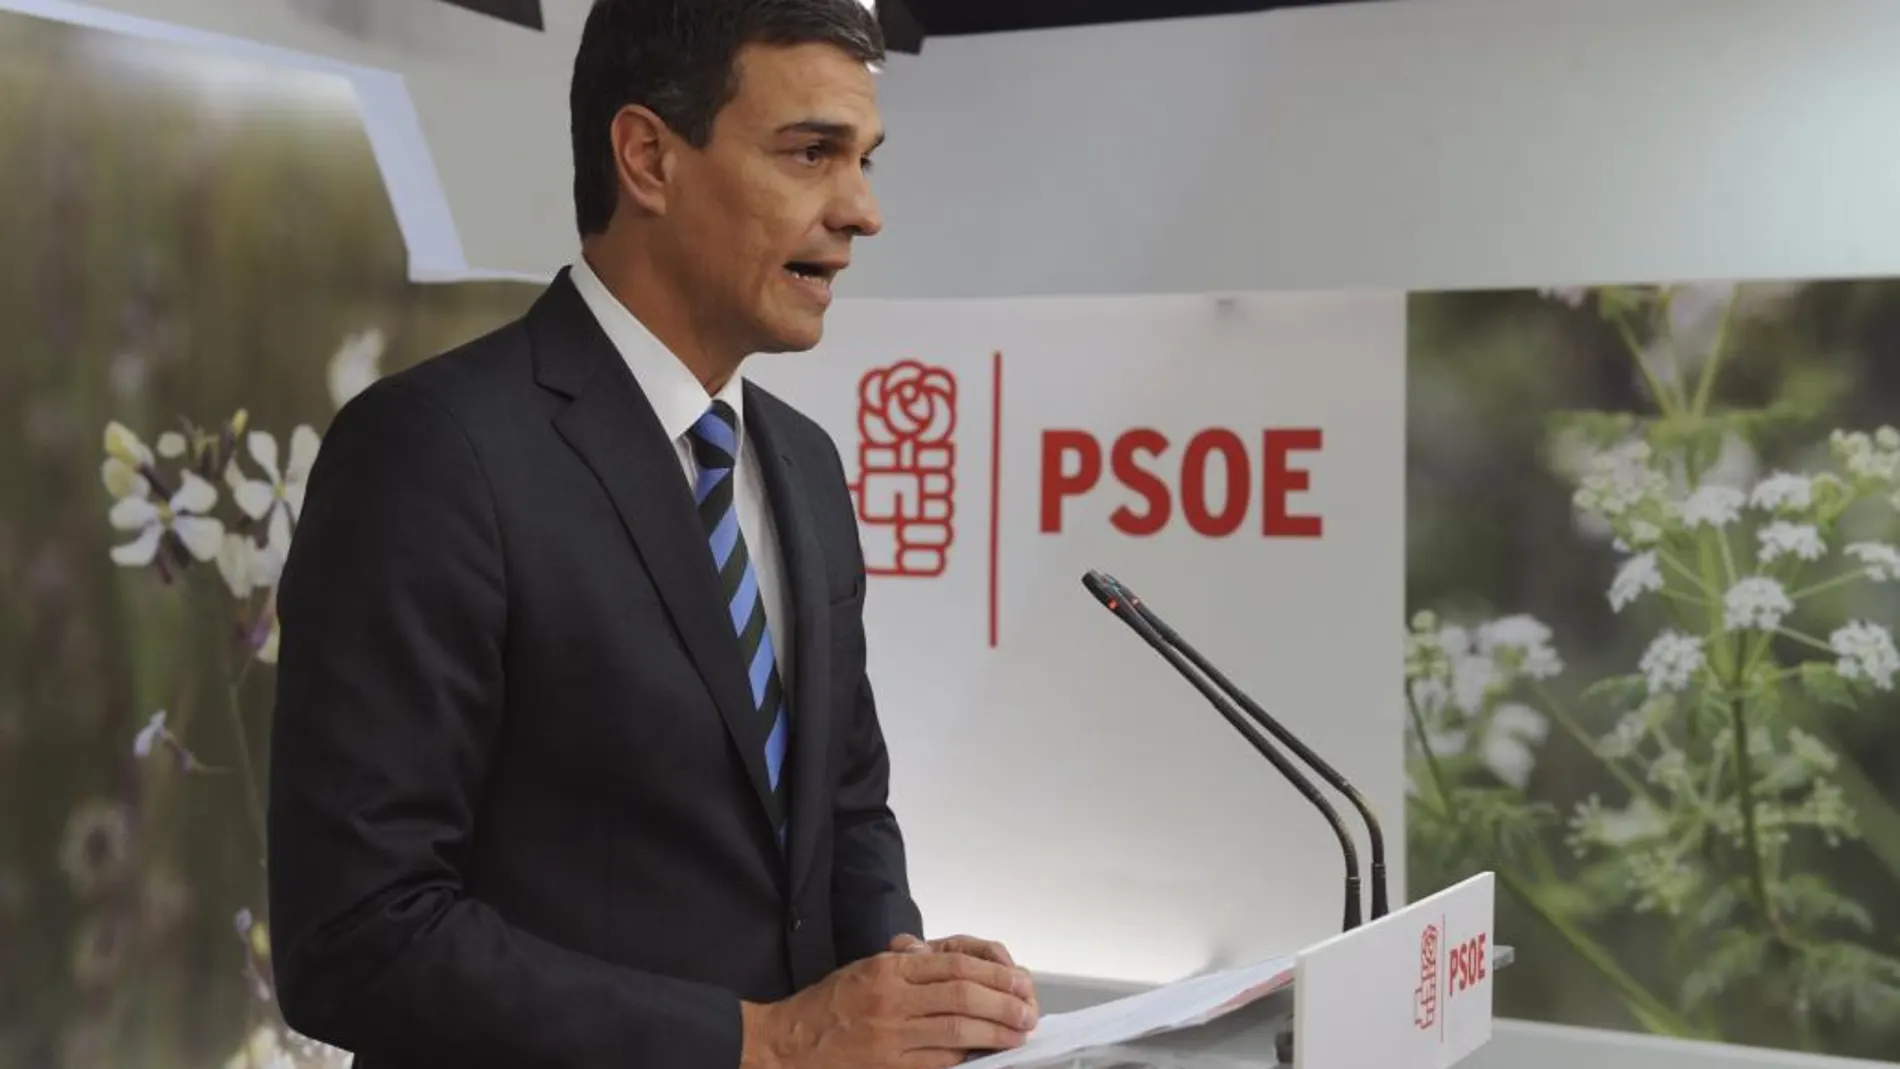 Fotografía facilitada por el PSOE, de su secretario general, Pedro Sánchez, durante una declaración institucional en la sede socialista de Ferraz